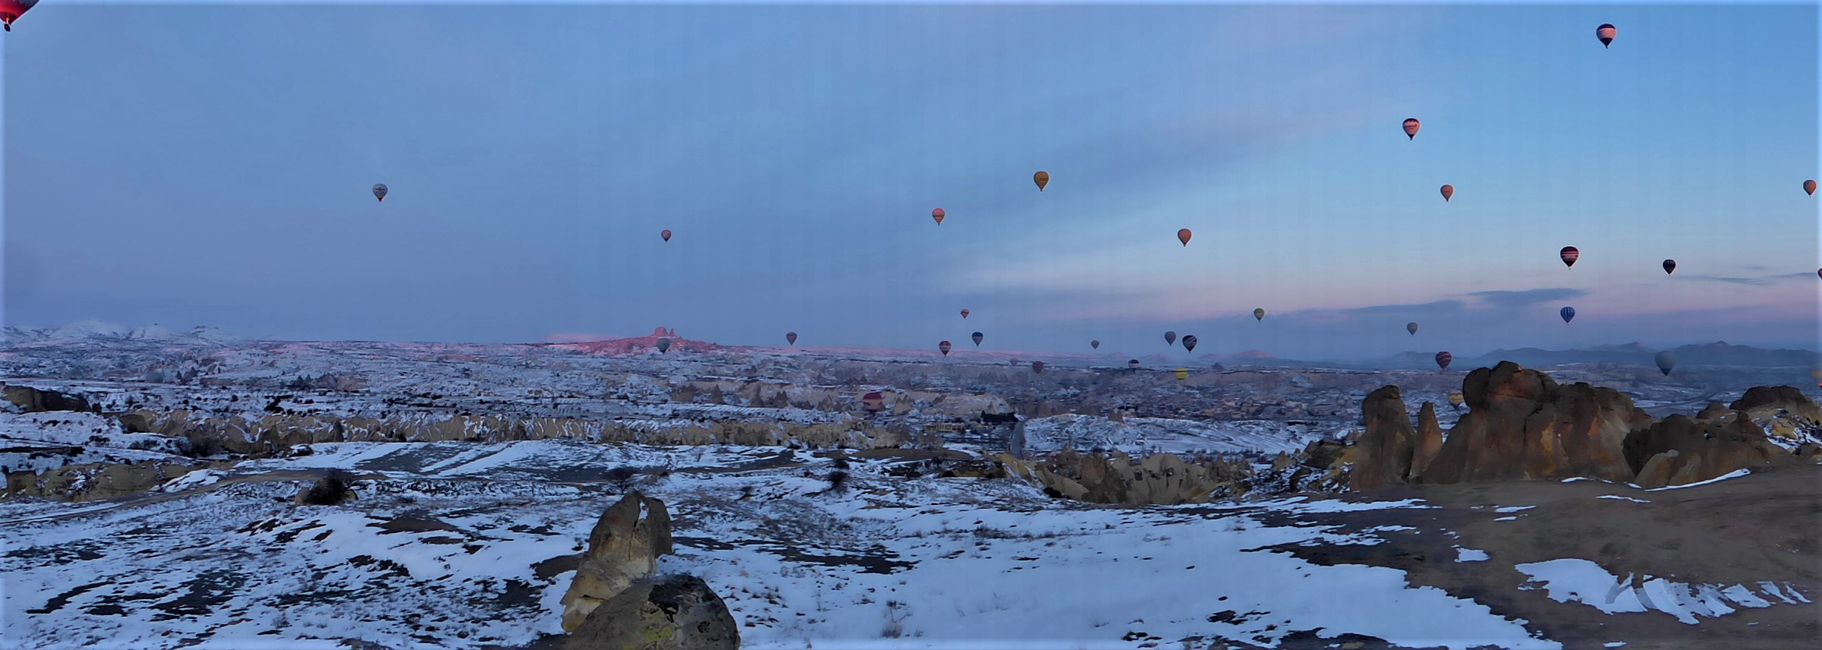 Hot air balloons over Göreme